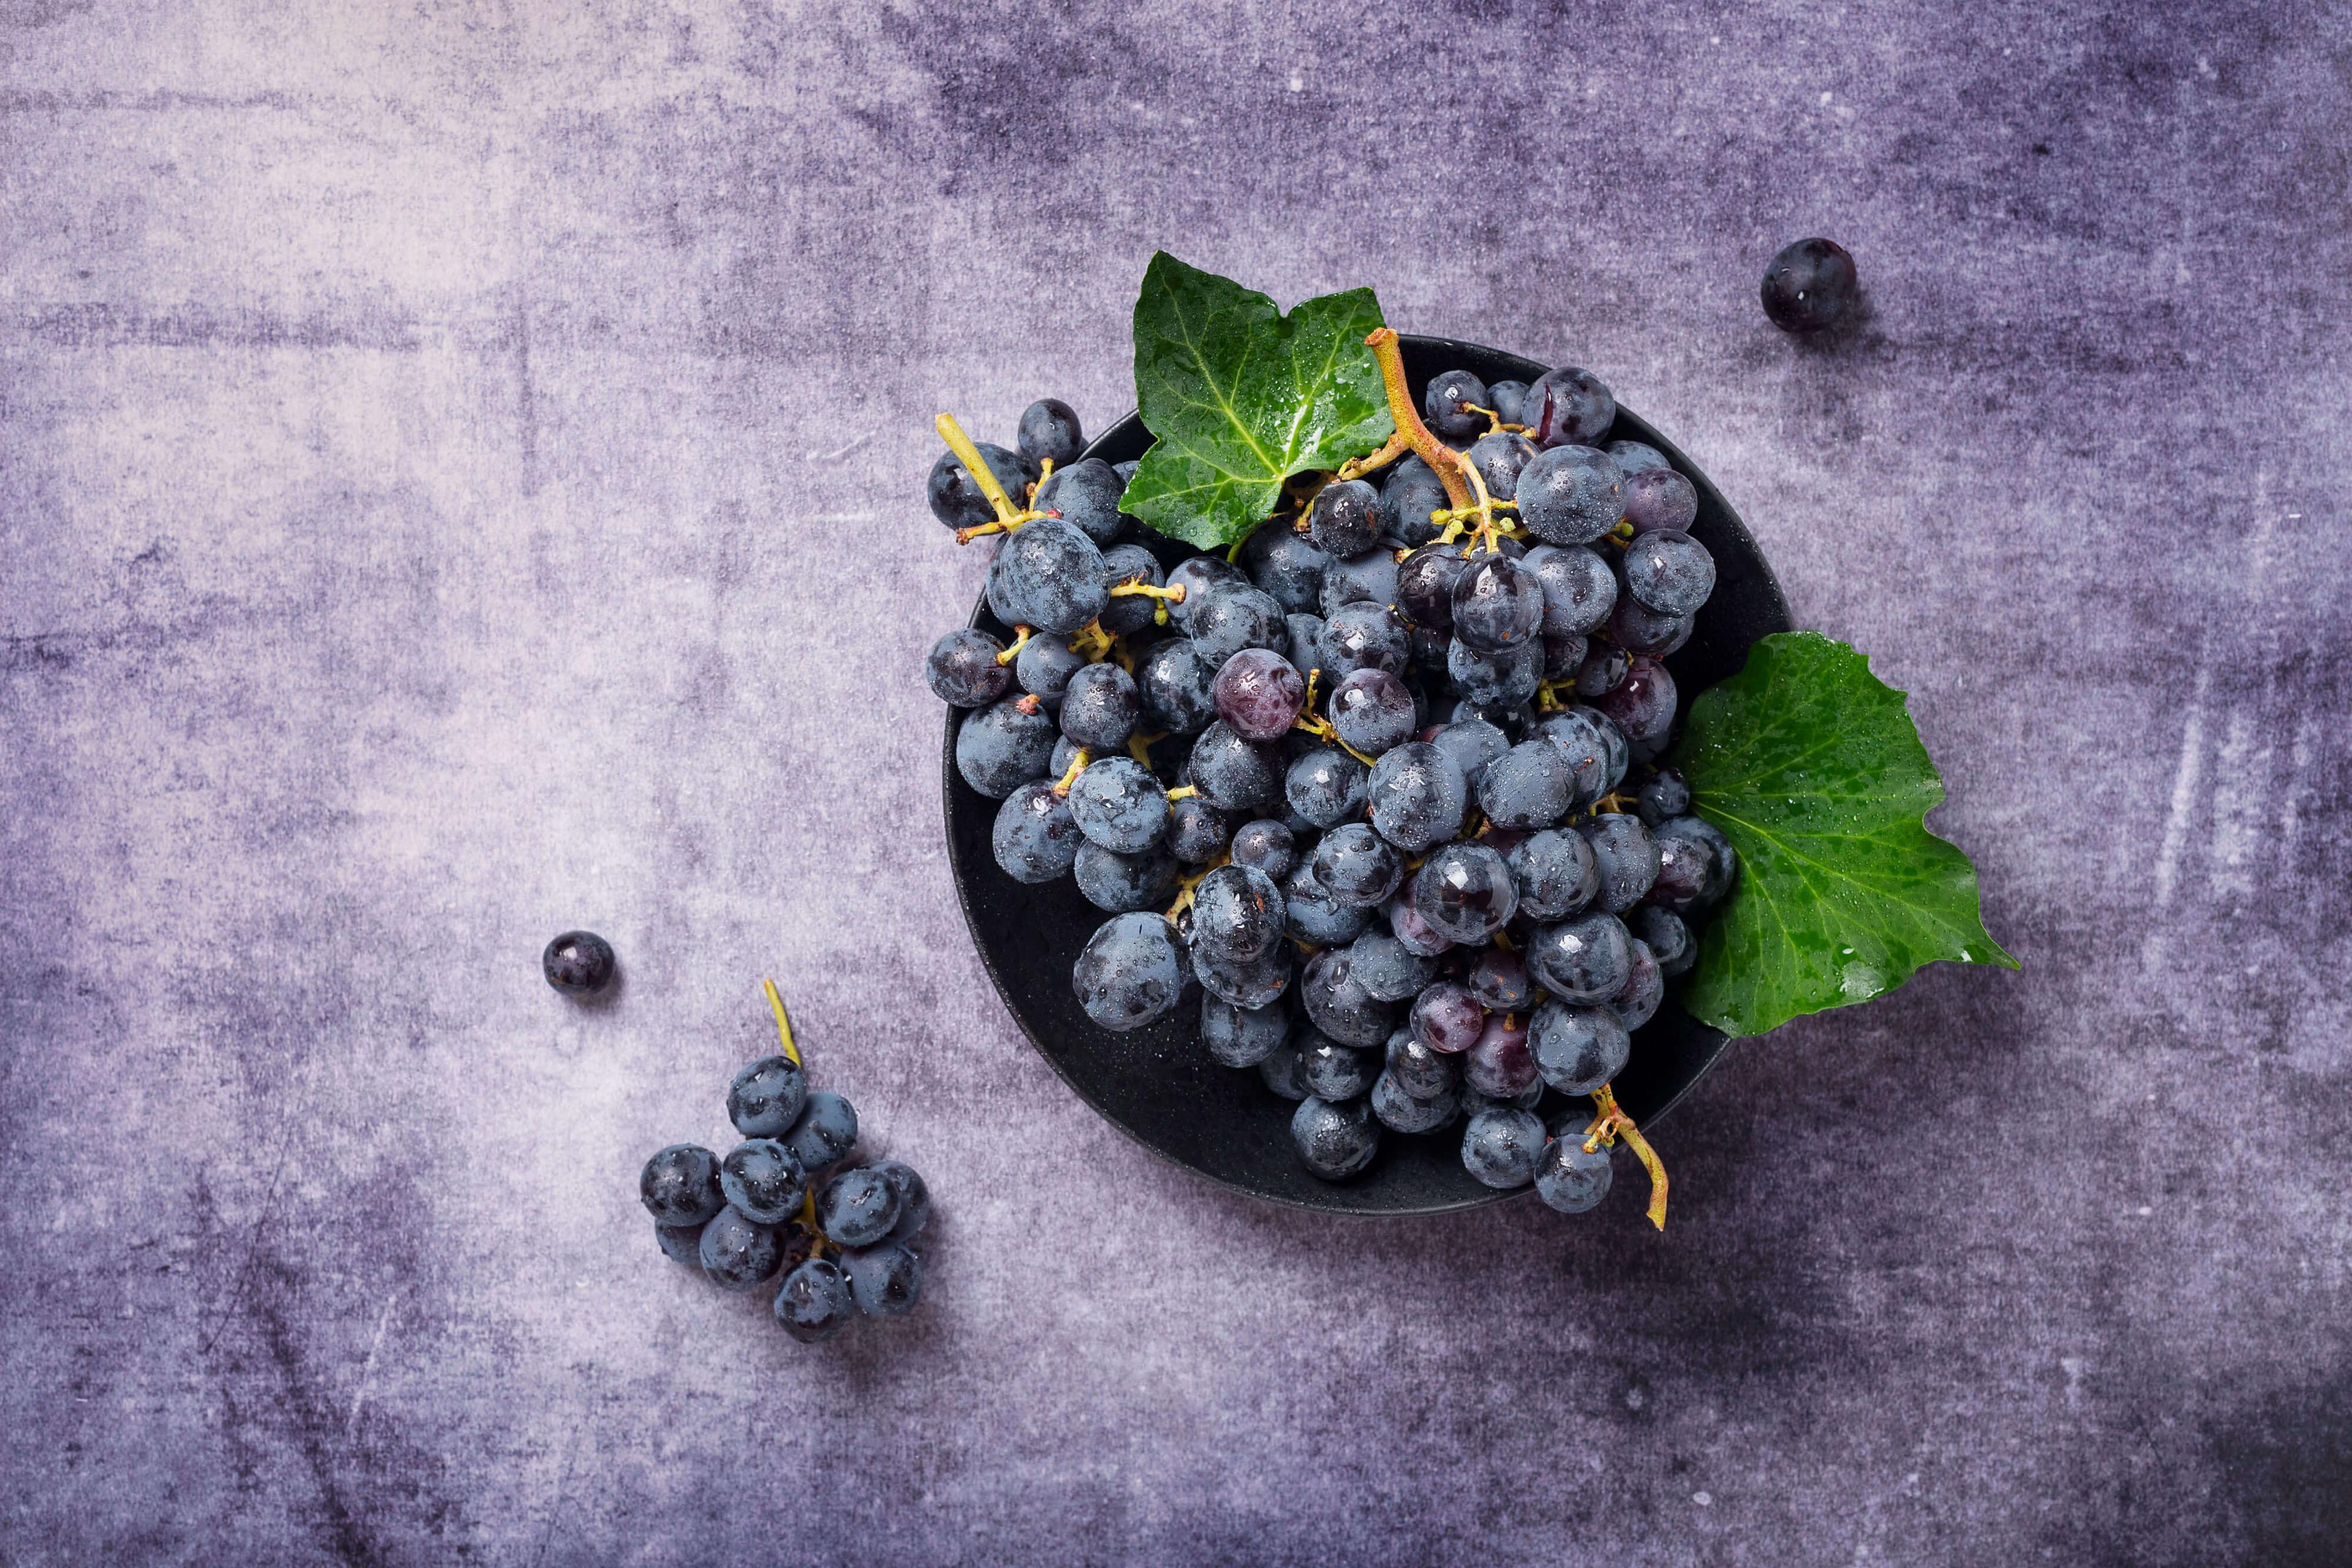 7 आश्चर्यकारक काळ्या द्राक्षांचे फायदे: दररोजच्या आहारात समाविष्ट करण्याच्या टिपा